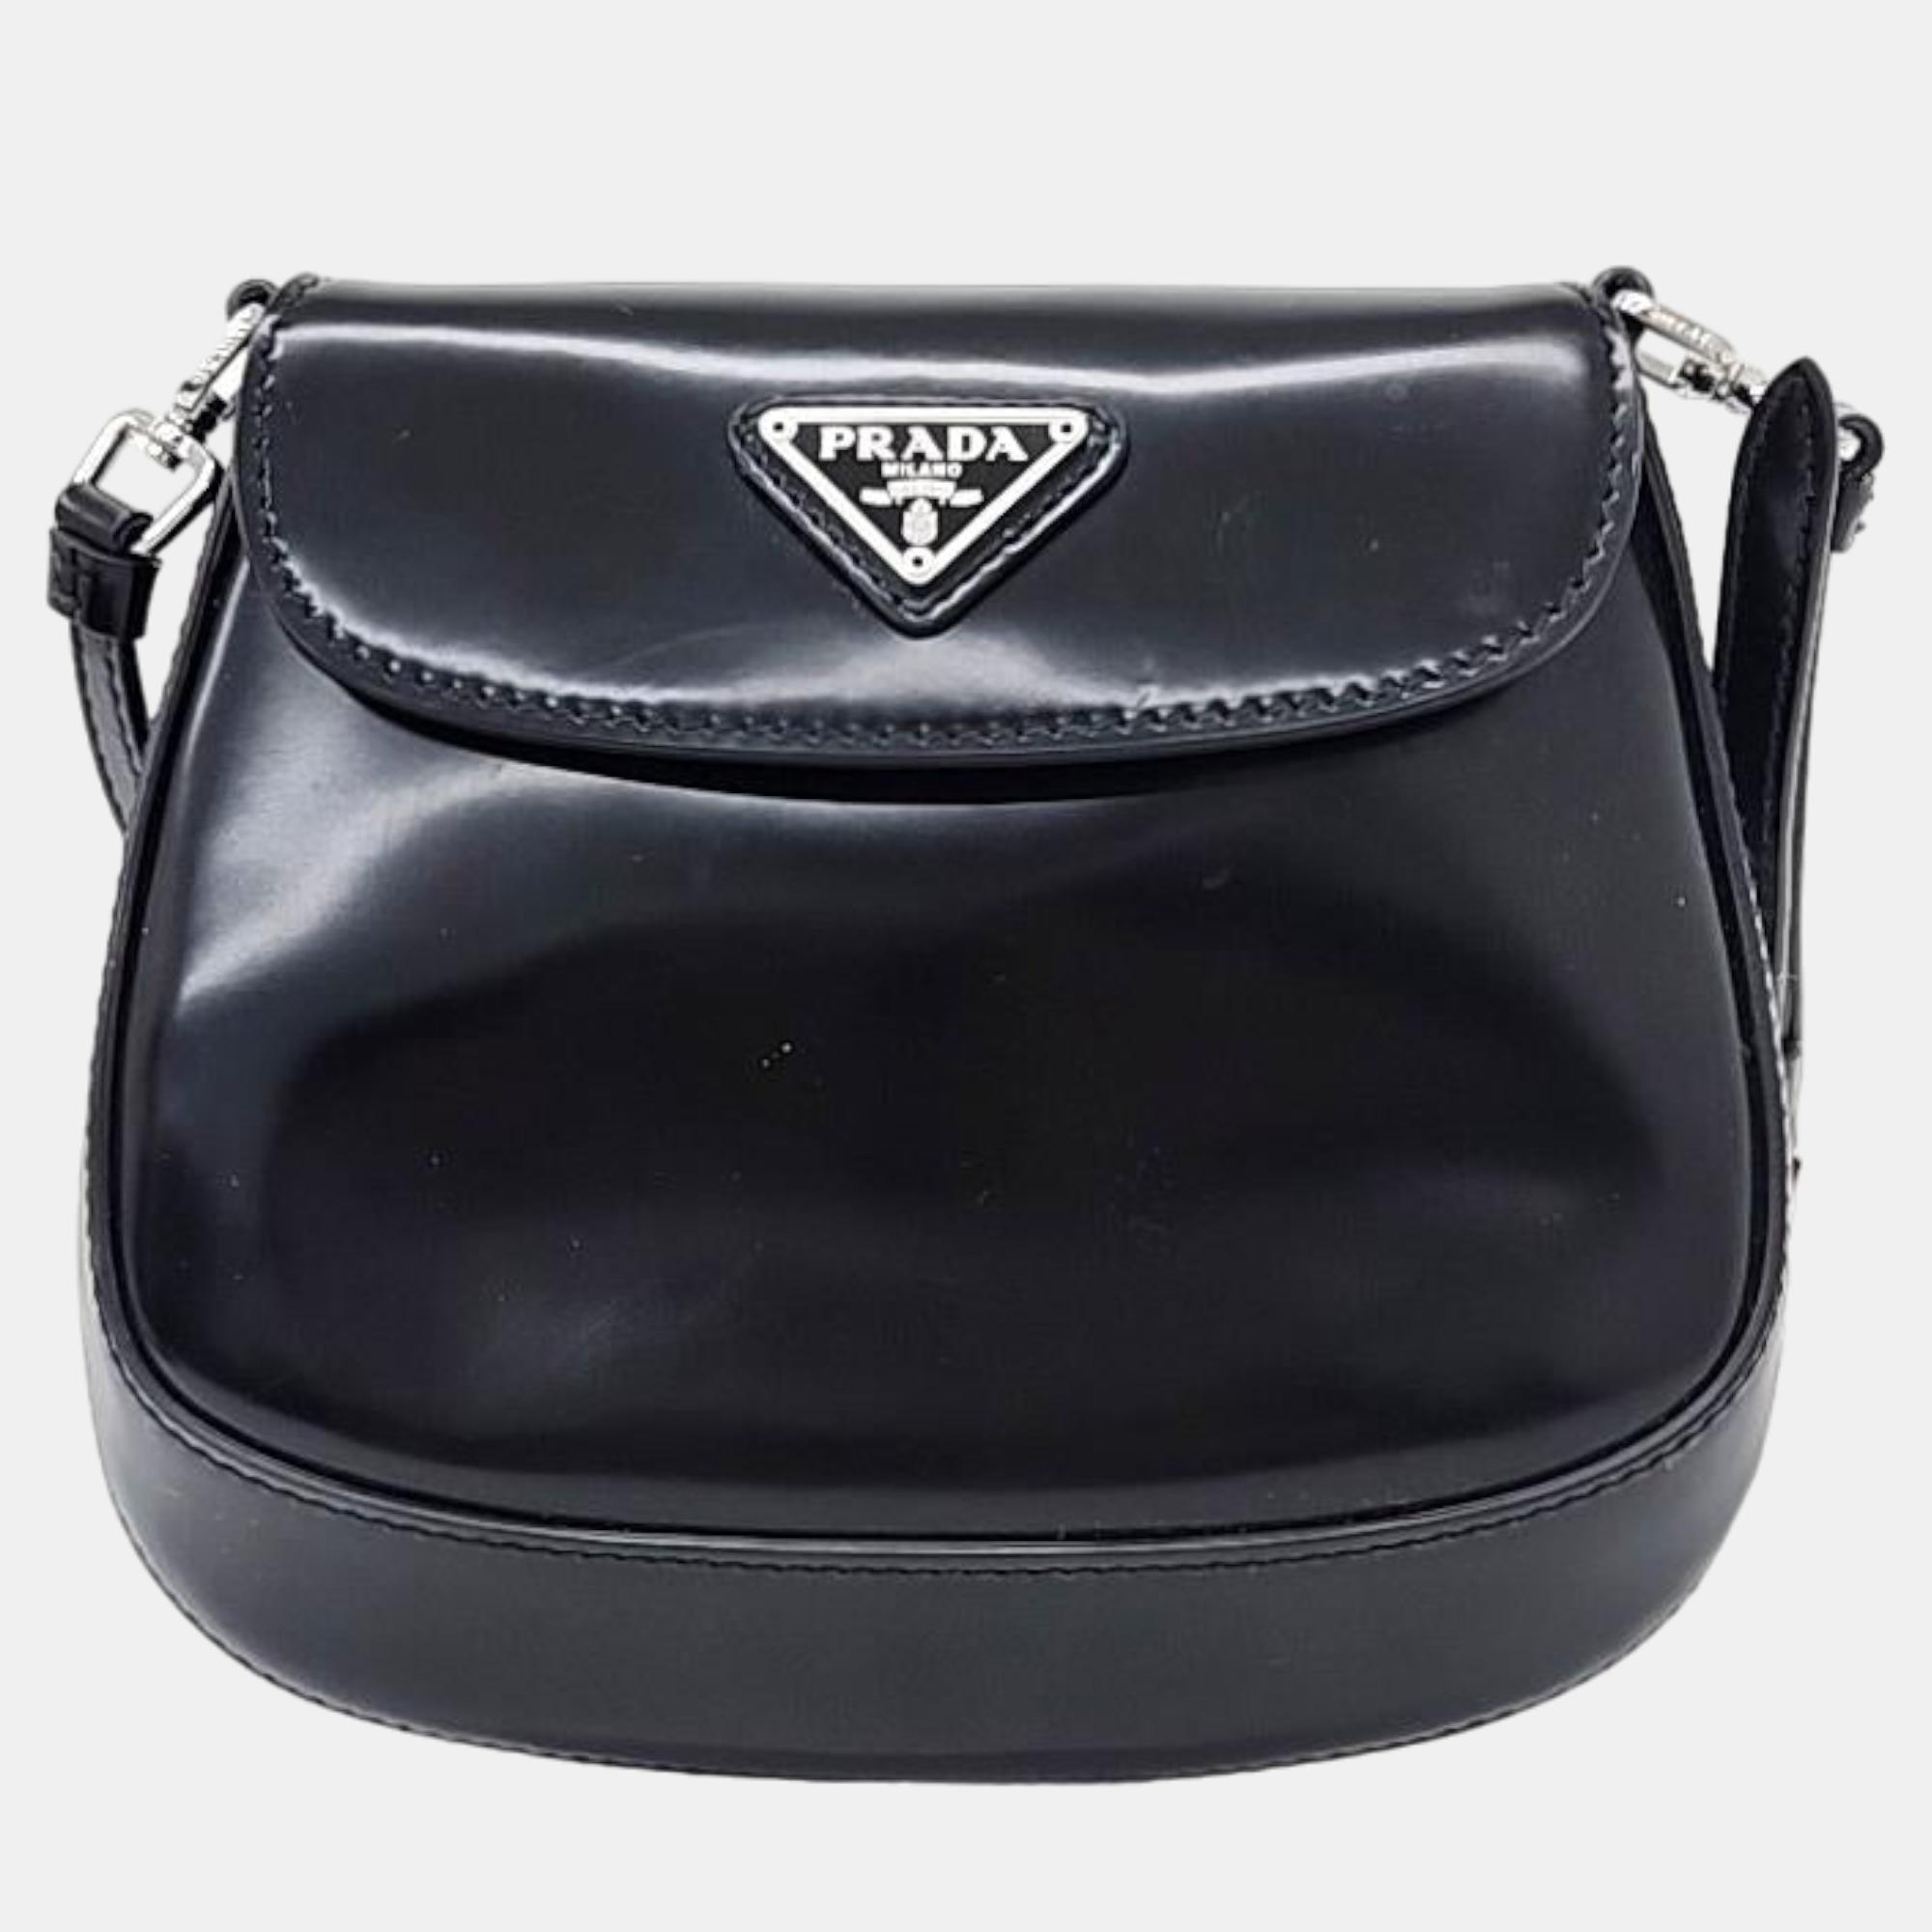 

Prada Black Leather Mini Spazzolato Cleo Bag